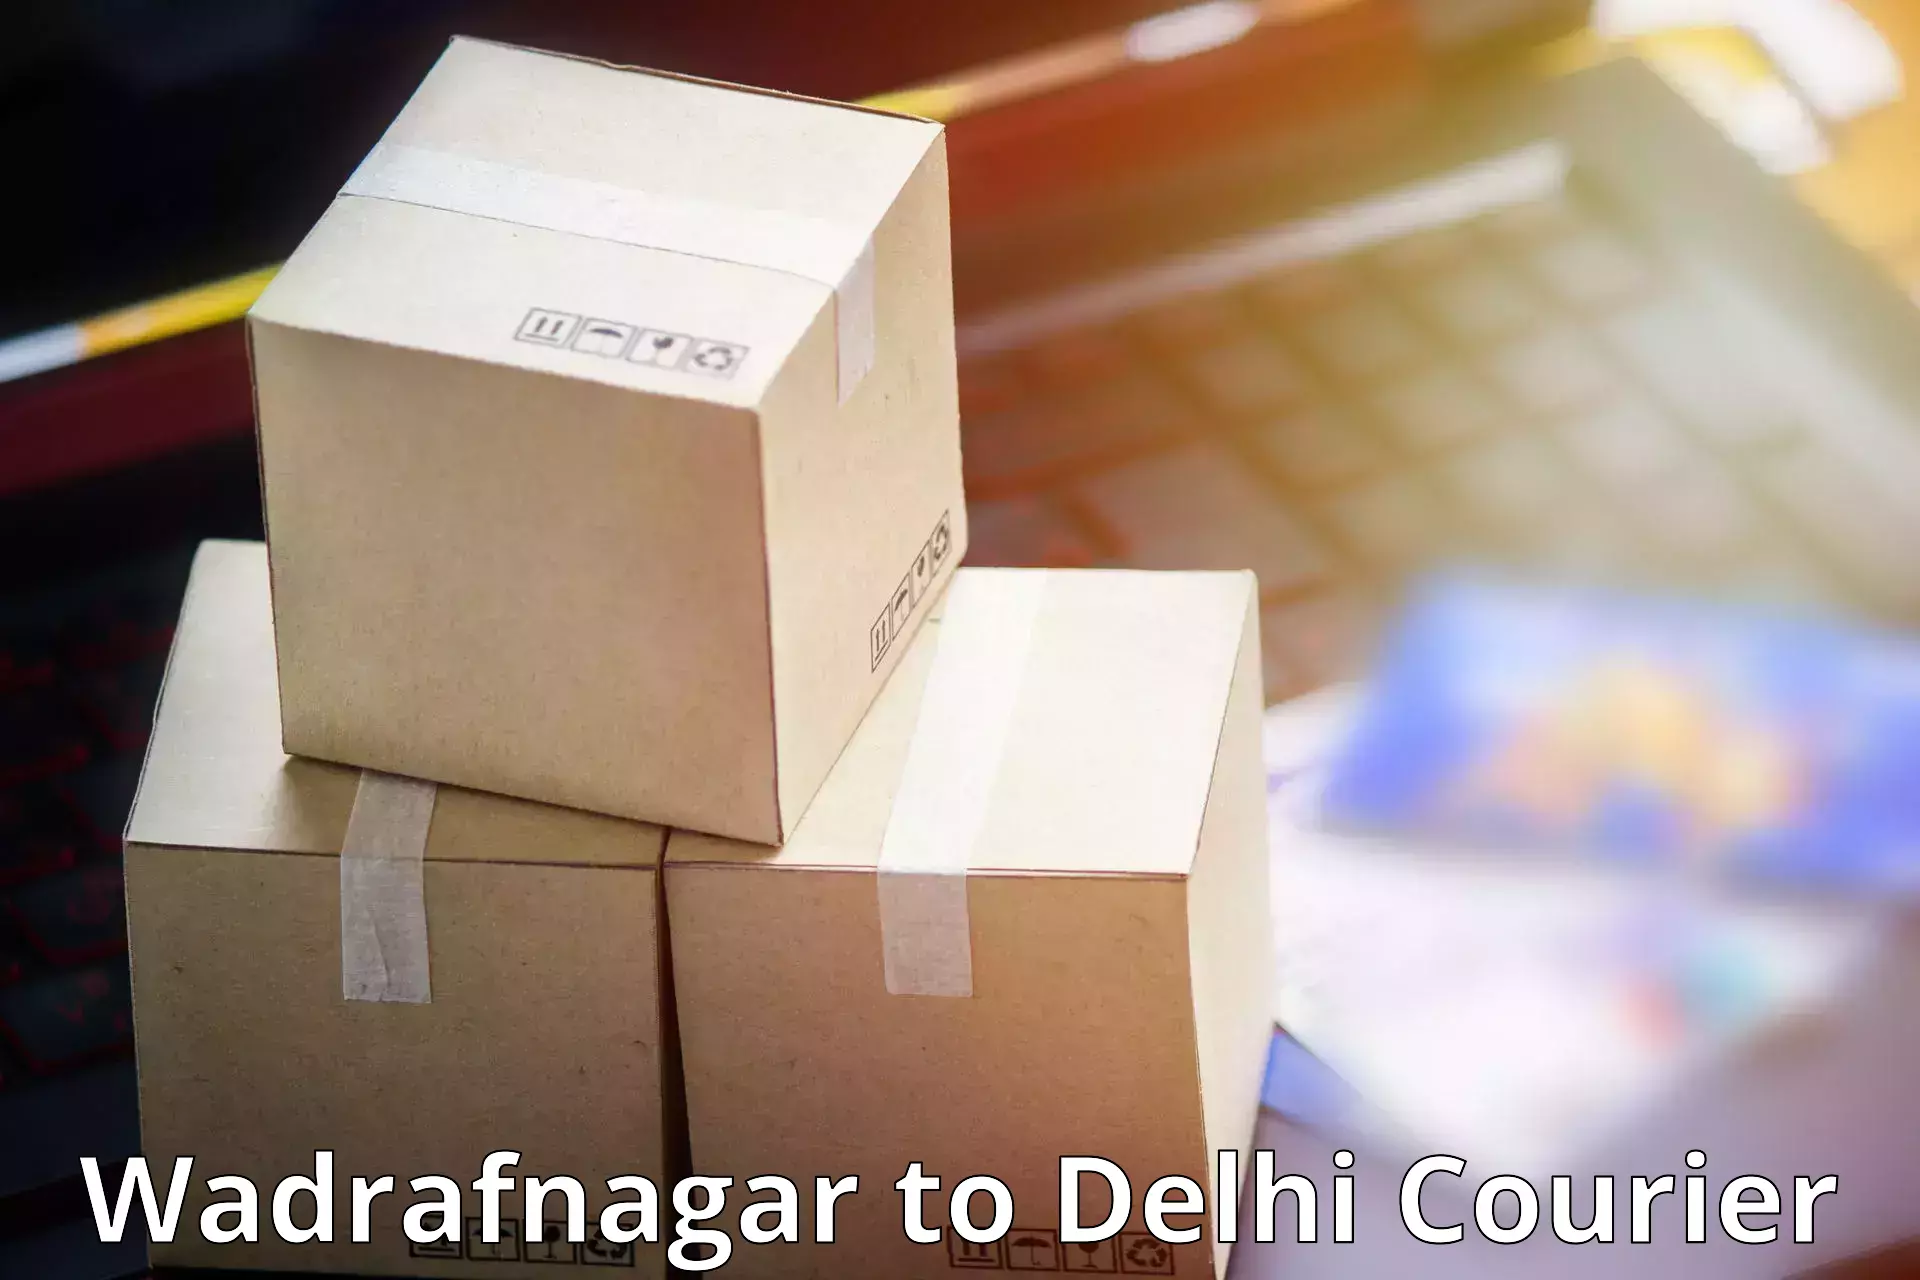 Cost-effective courier options Wadrafnagar to IIT Delhi